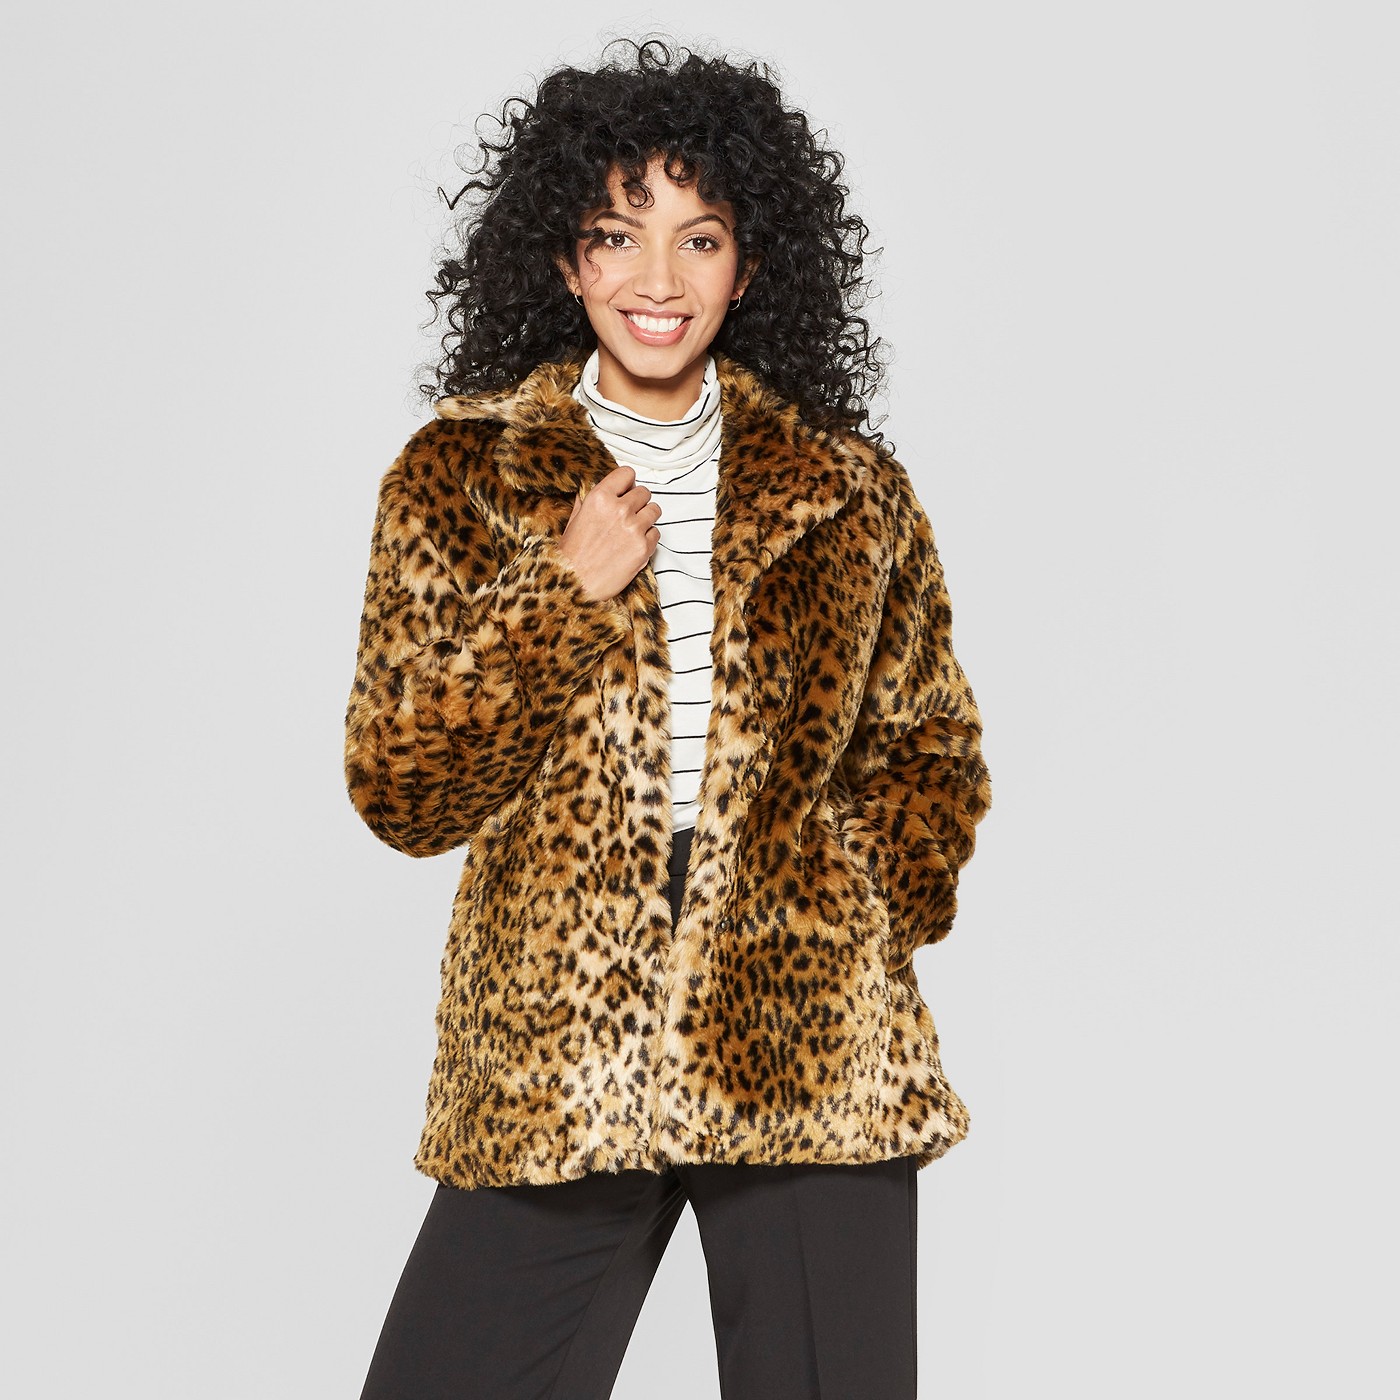 Women's Faux Fur Leopard Print Shawl Jacket - A New Dayâ¢ Tan - image 1 of 2